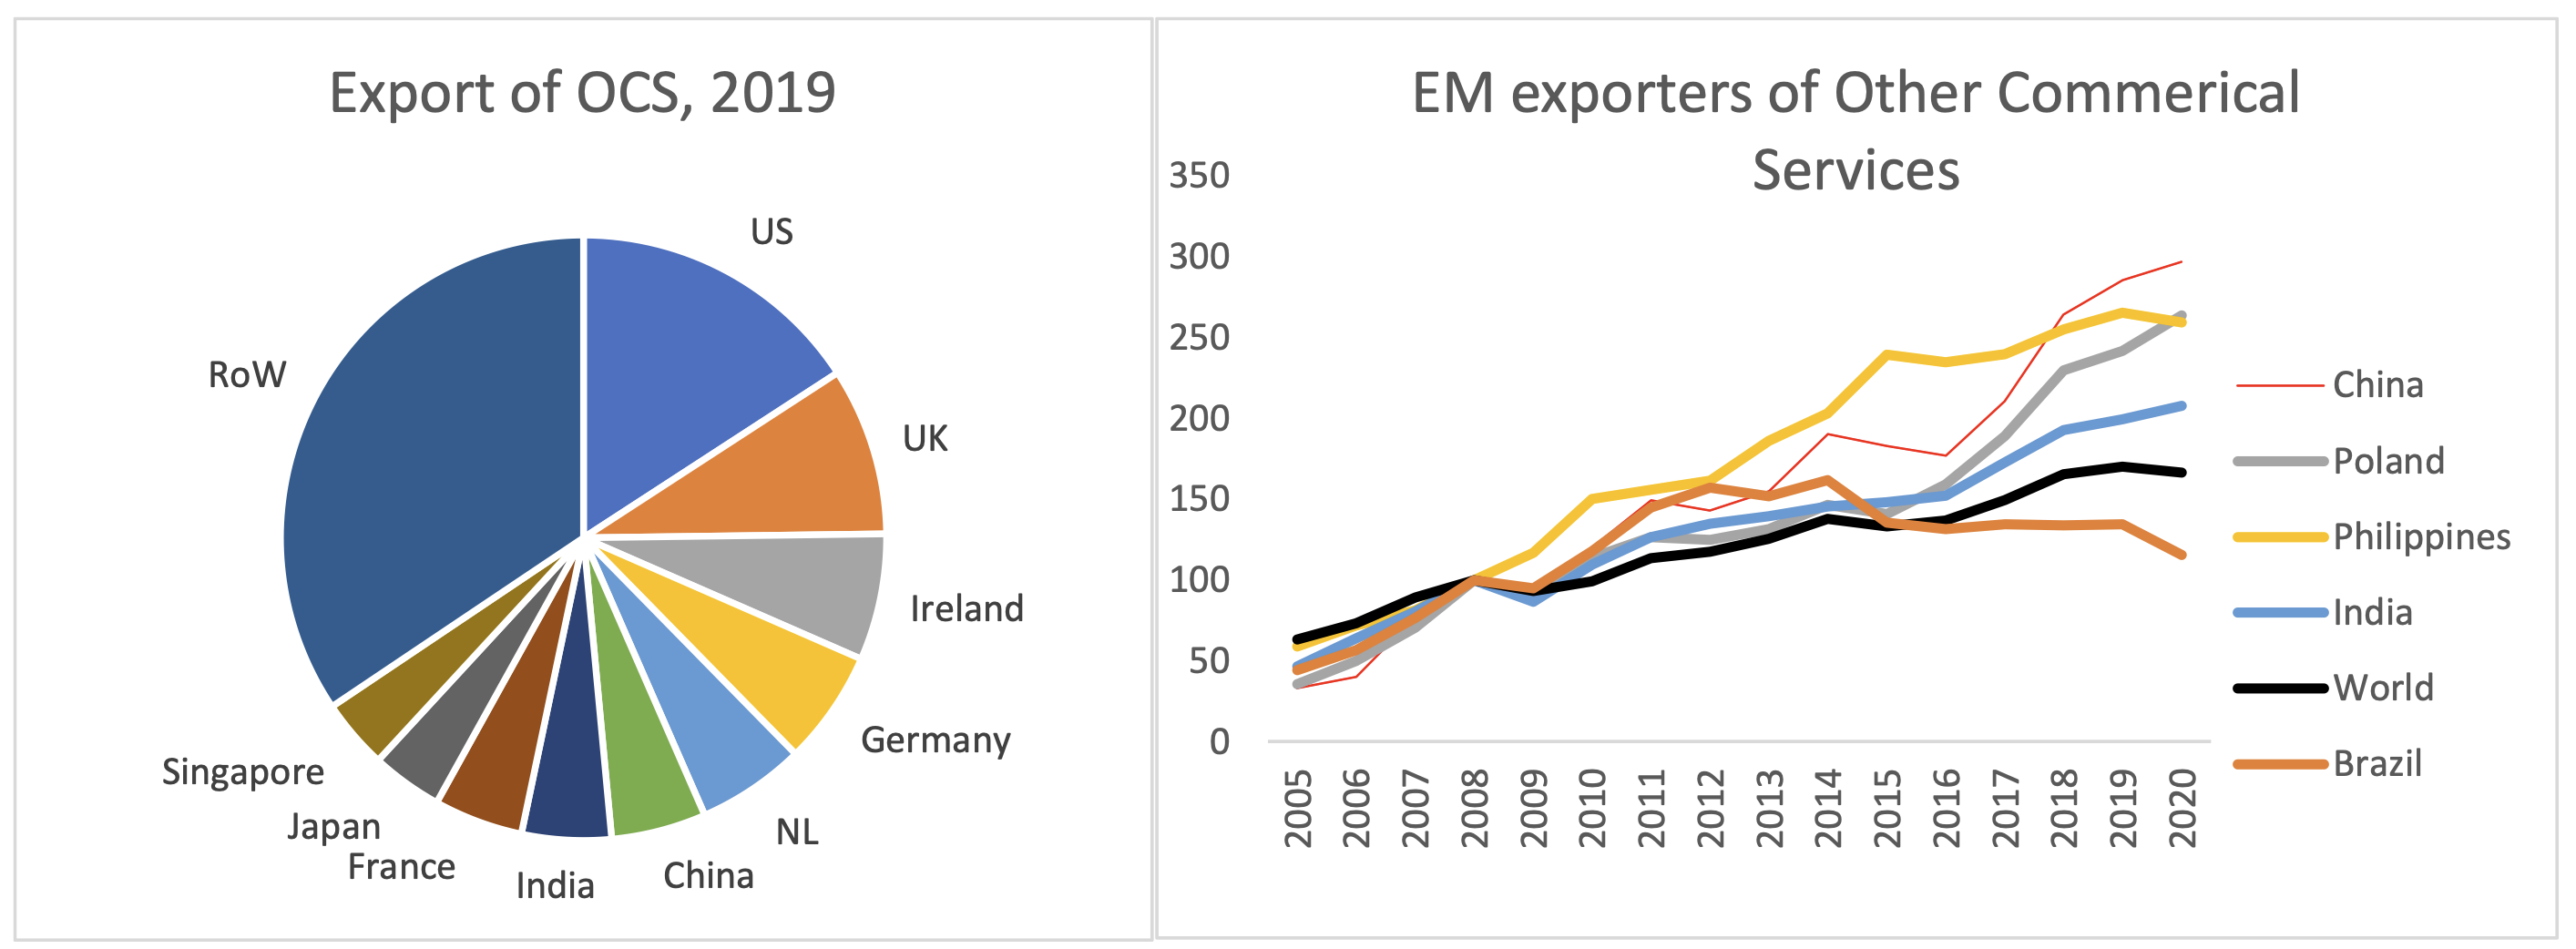 图A2自2005年以来OCS和新兴市场(EM)的最大出口国的趋势